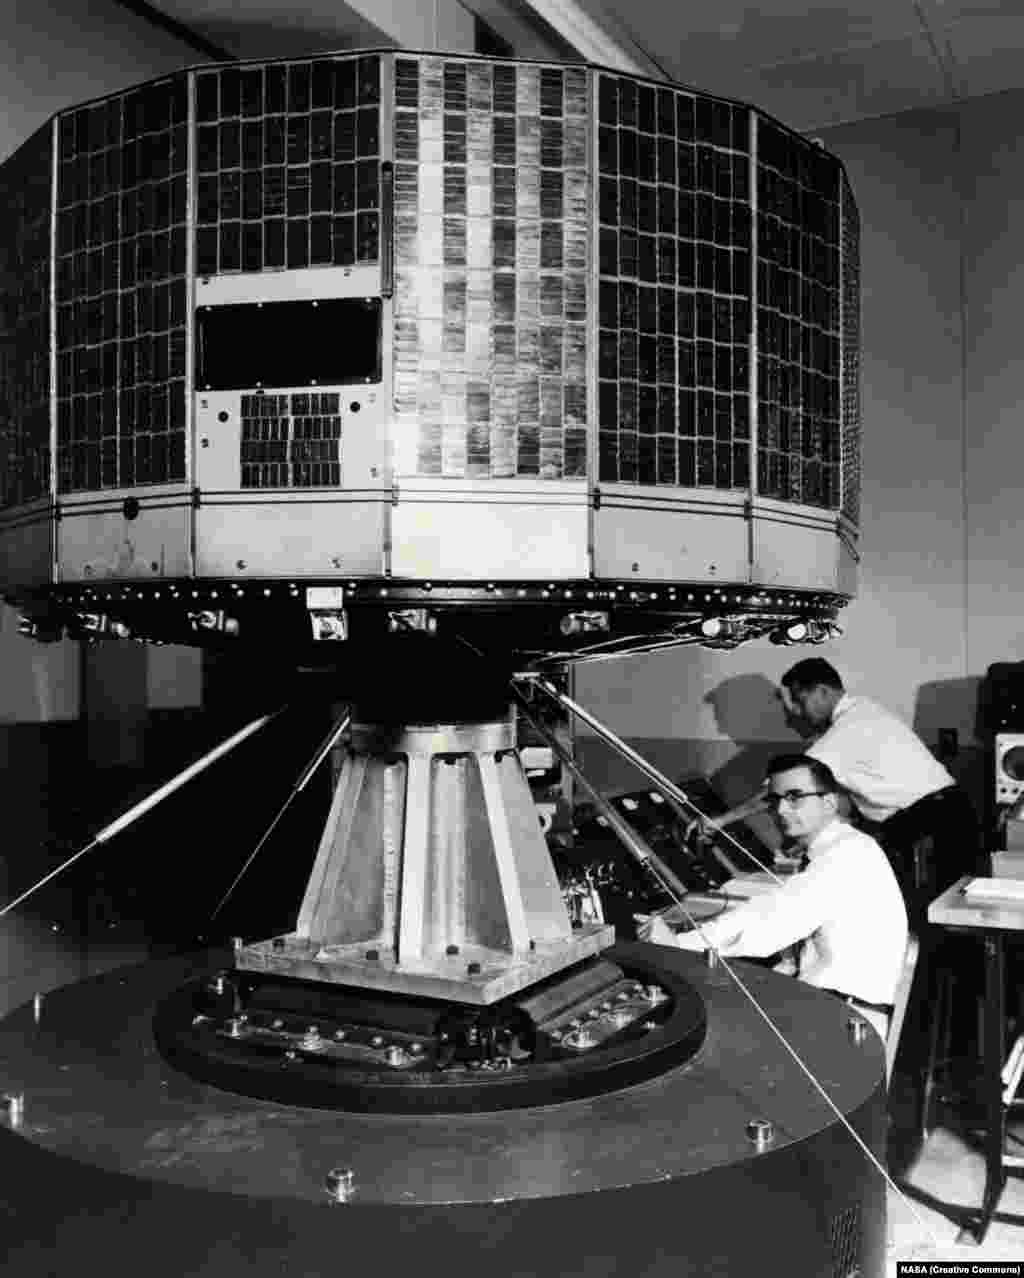 АҚШ ғарыш агенттігінің (NASA) Tiros 1 метеоспутнигі 1960 жылы ұшырылған. Суретте оны сынақтан өткізіп жатқан сәт бейнеленген. Tiros ауа райын болжауға арналған алғашқы спутник болды. Оған орнатылған екі камера жазған мәліметтерді Жердегі ұшуды басқару орталығына жіберіп отырды.